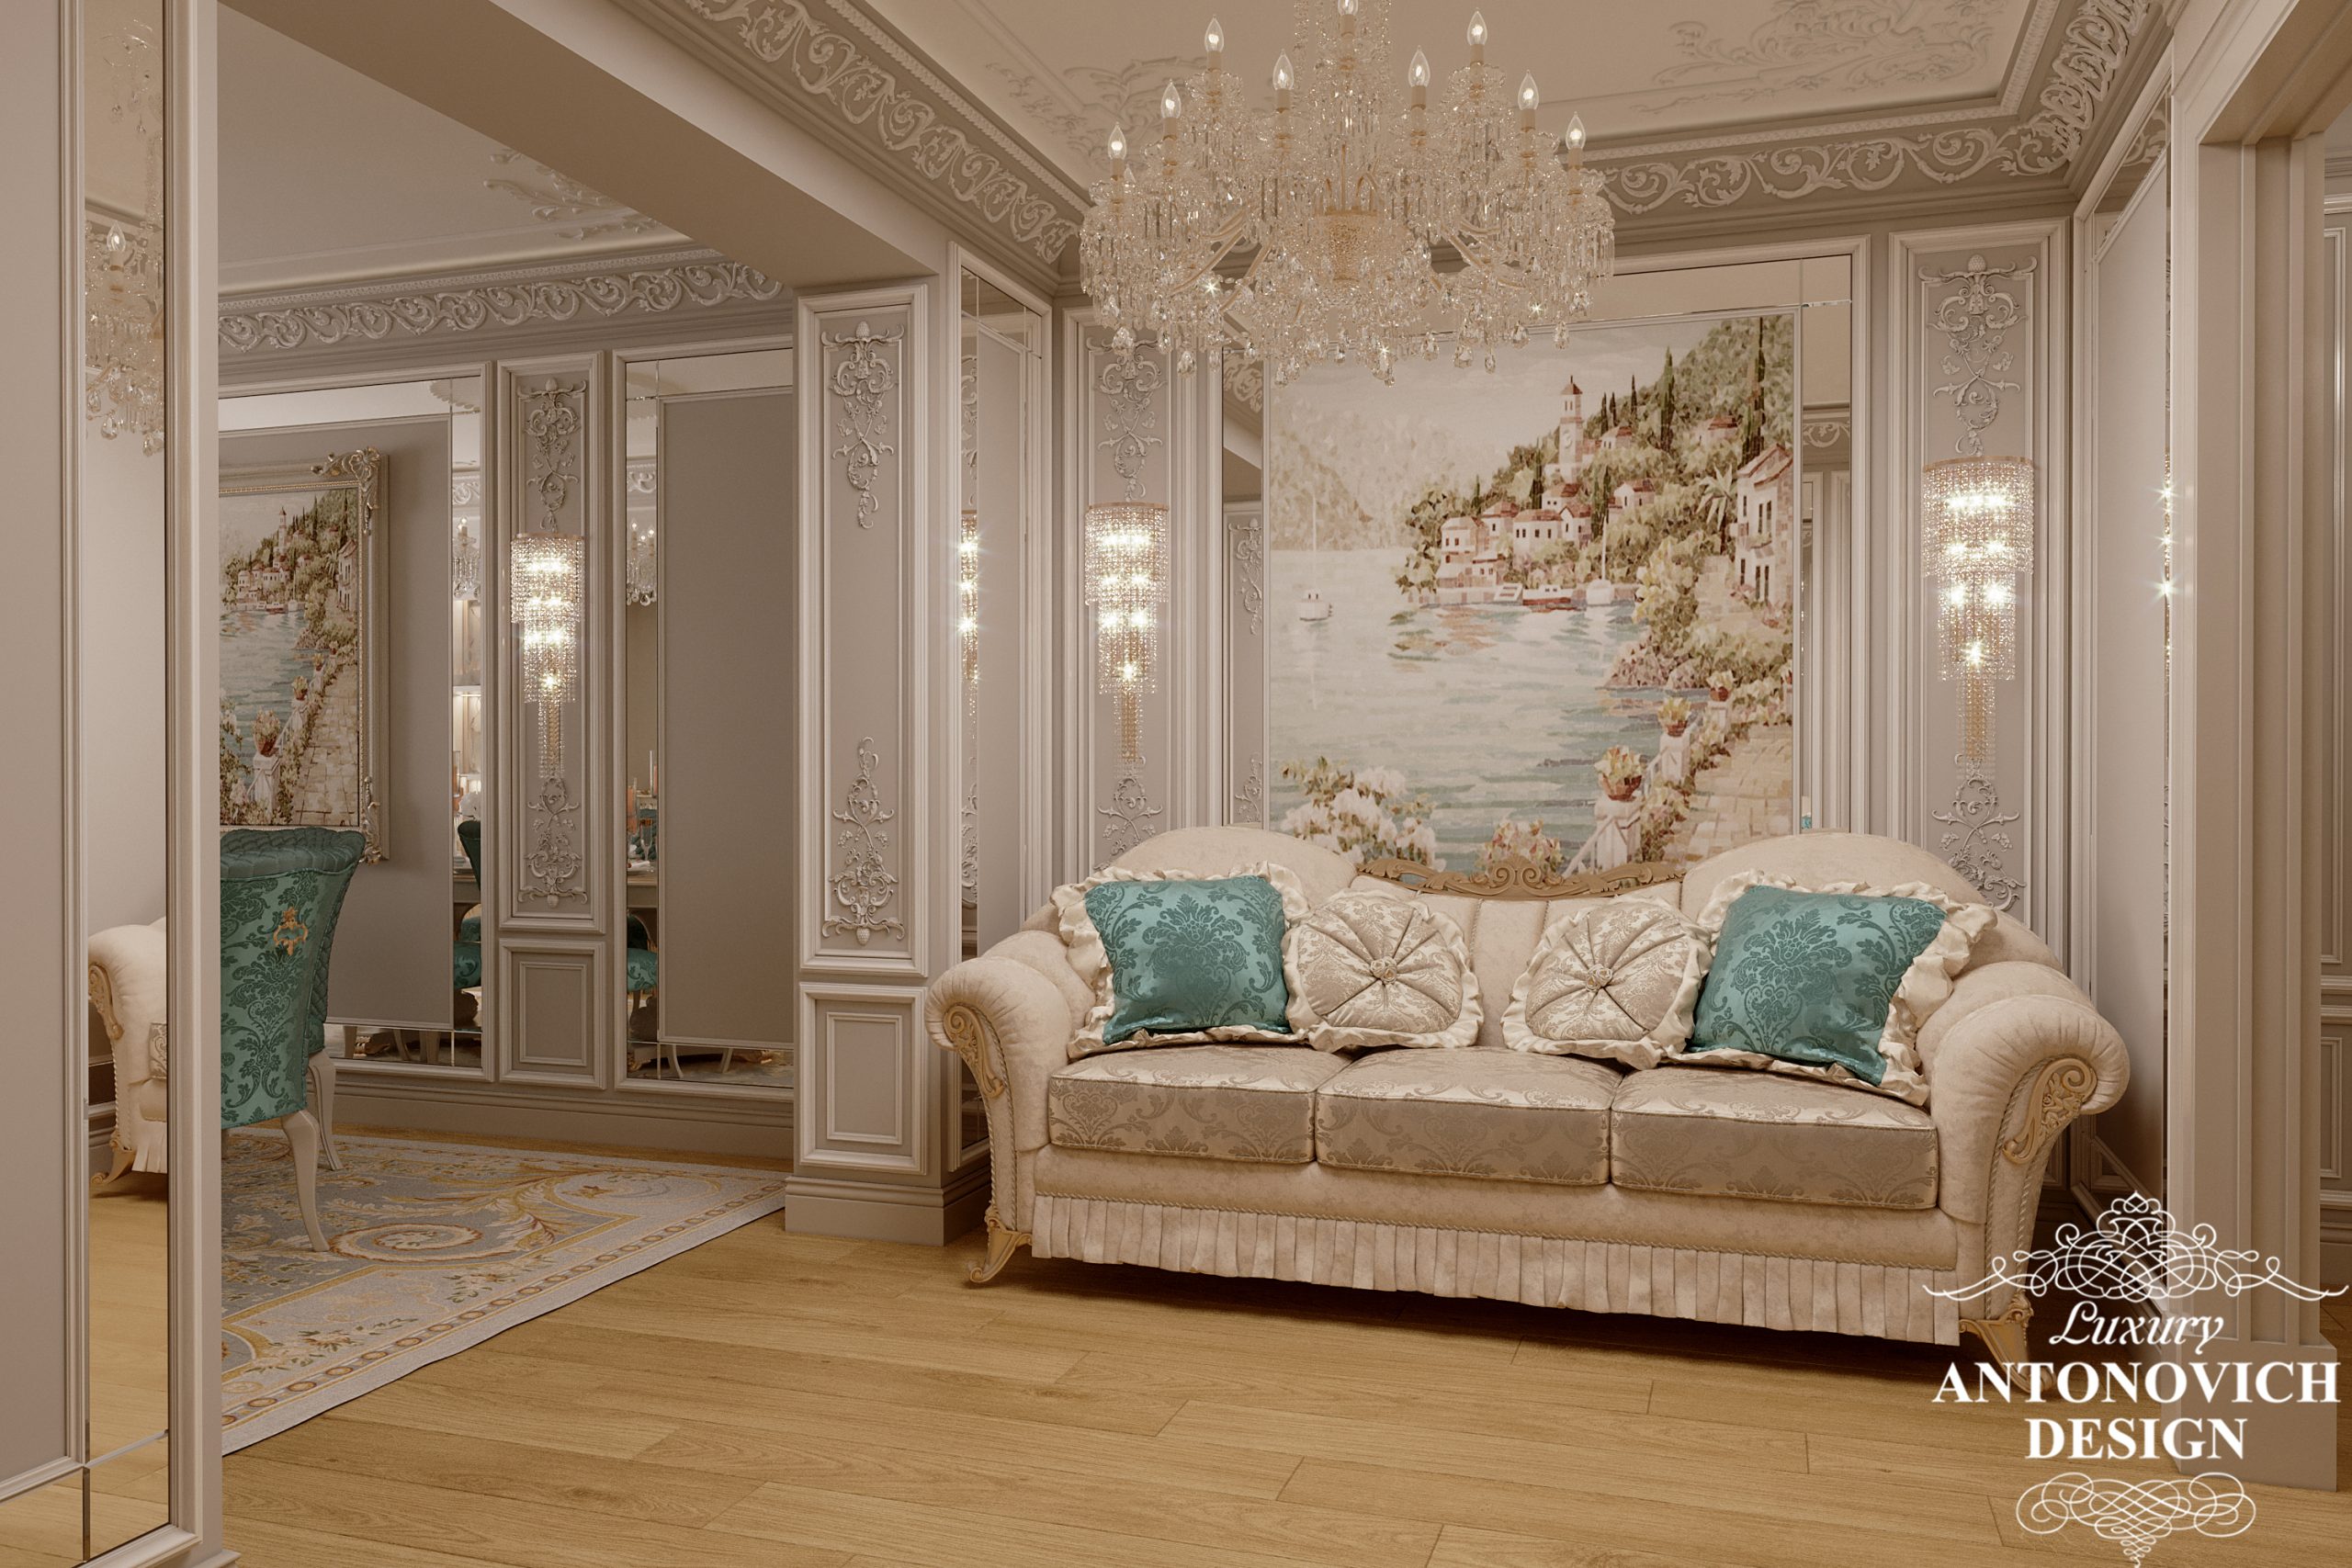 Итальянская роскошная мебель с мягкими подушками с бирюзовыми акцентами в интерьере изящной гостиной в неоклассическом стиле